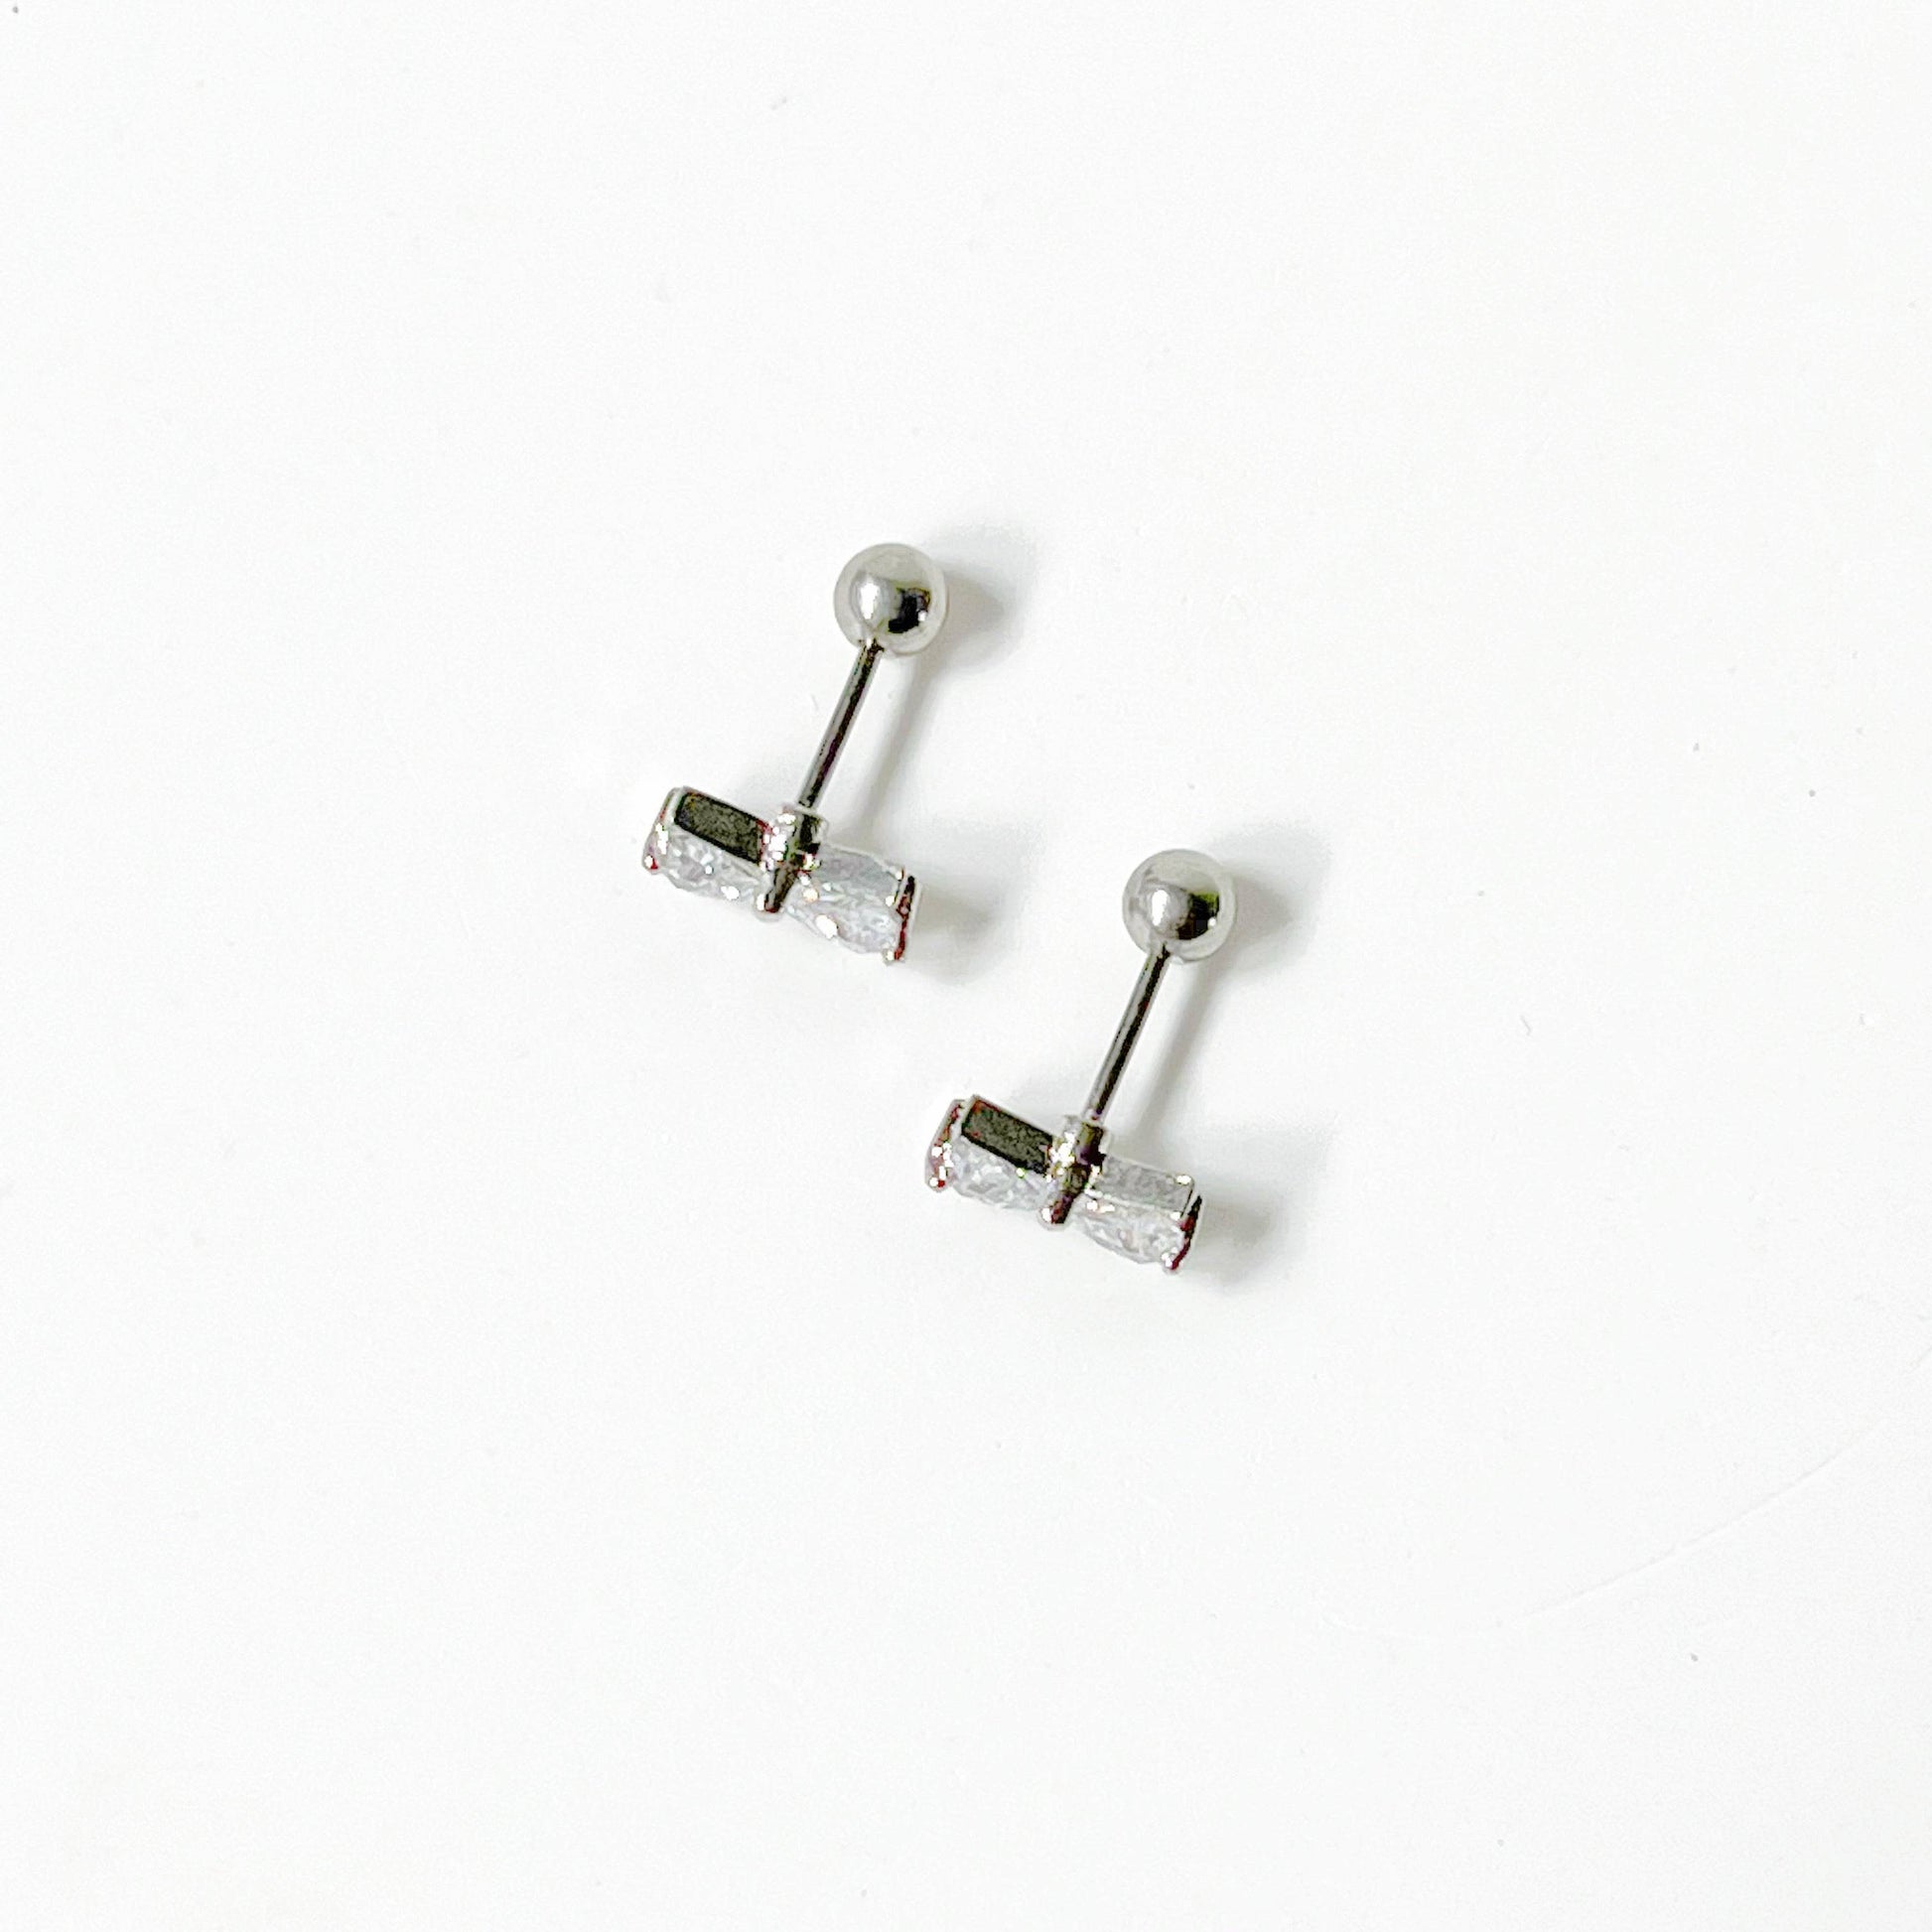 Silver Bow Zircon Earrings - Small Size Screw Back Earrings-Ninaouity